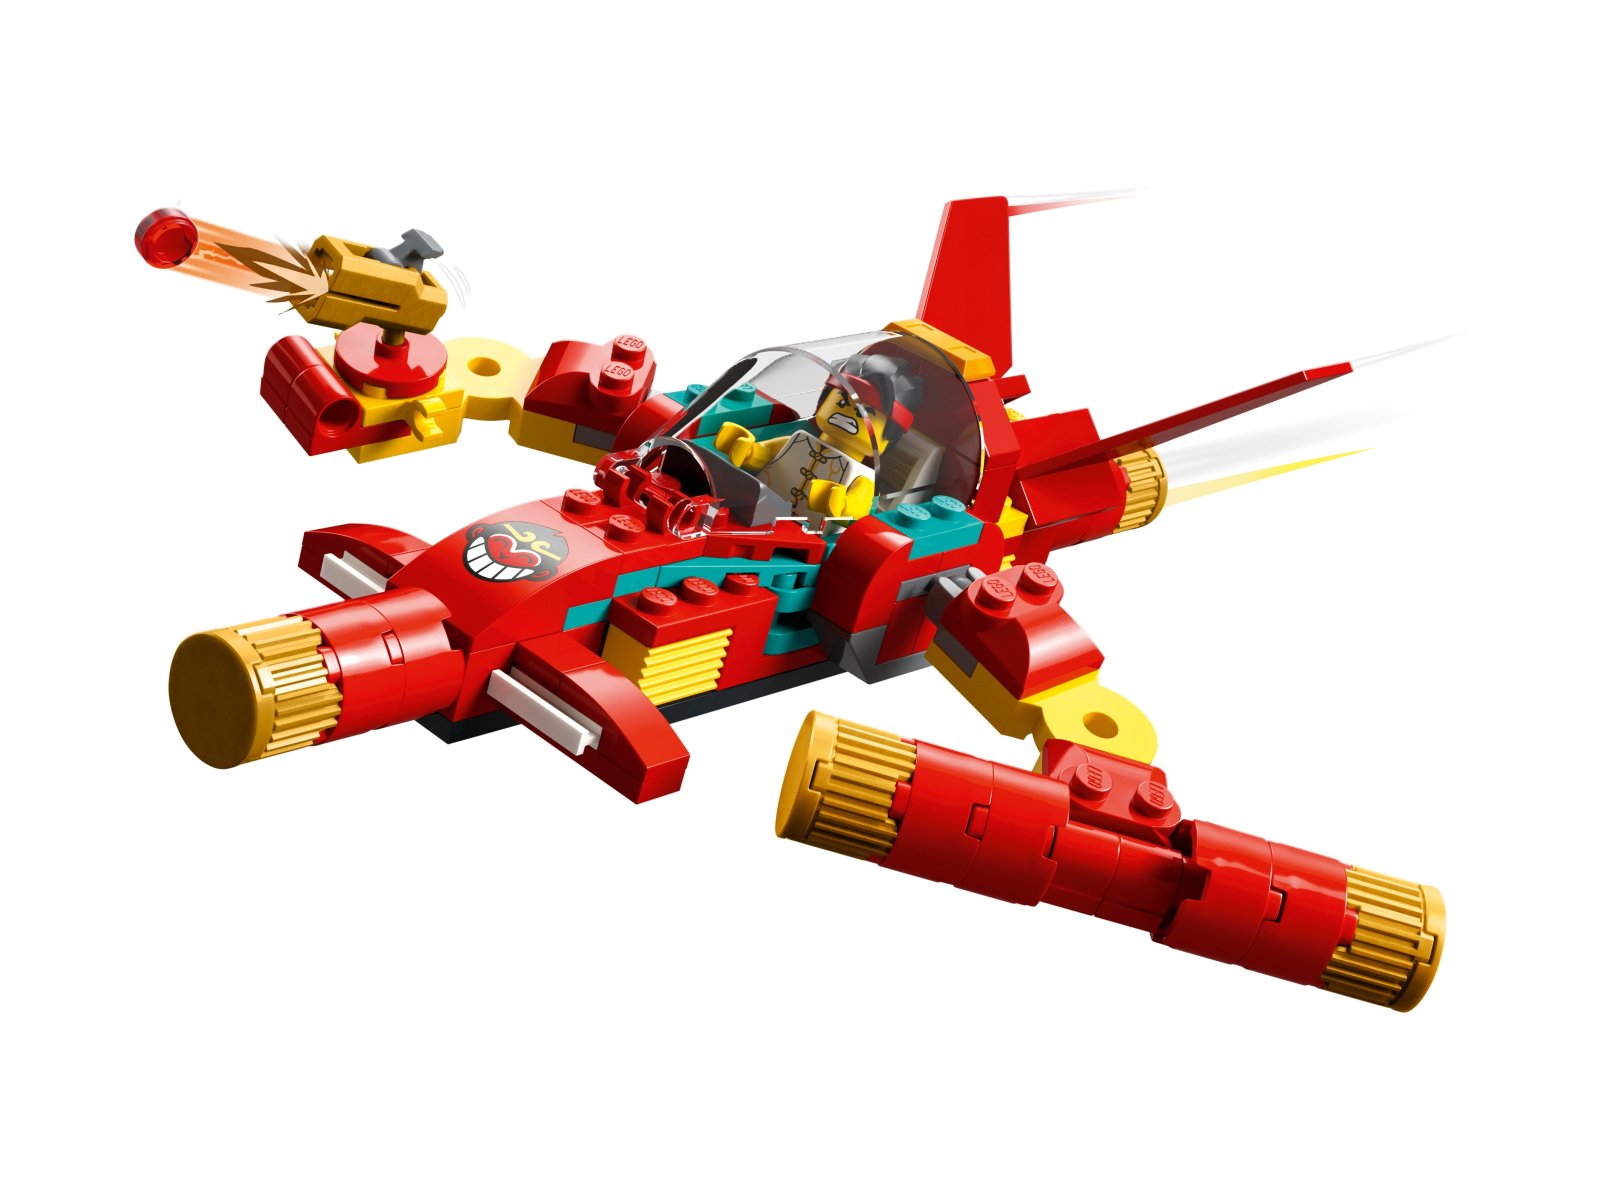 LEGO Monkie Kid 80030 Modele z kosturem Monkie Kida